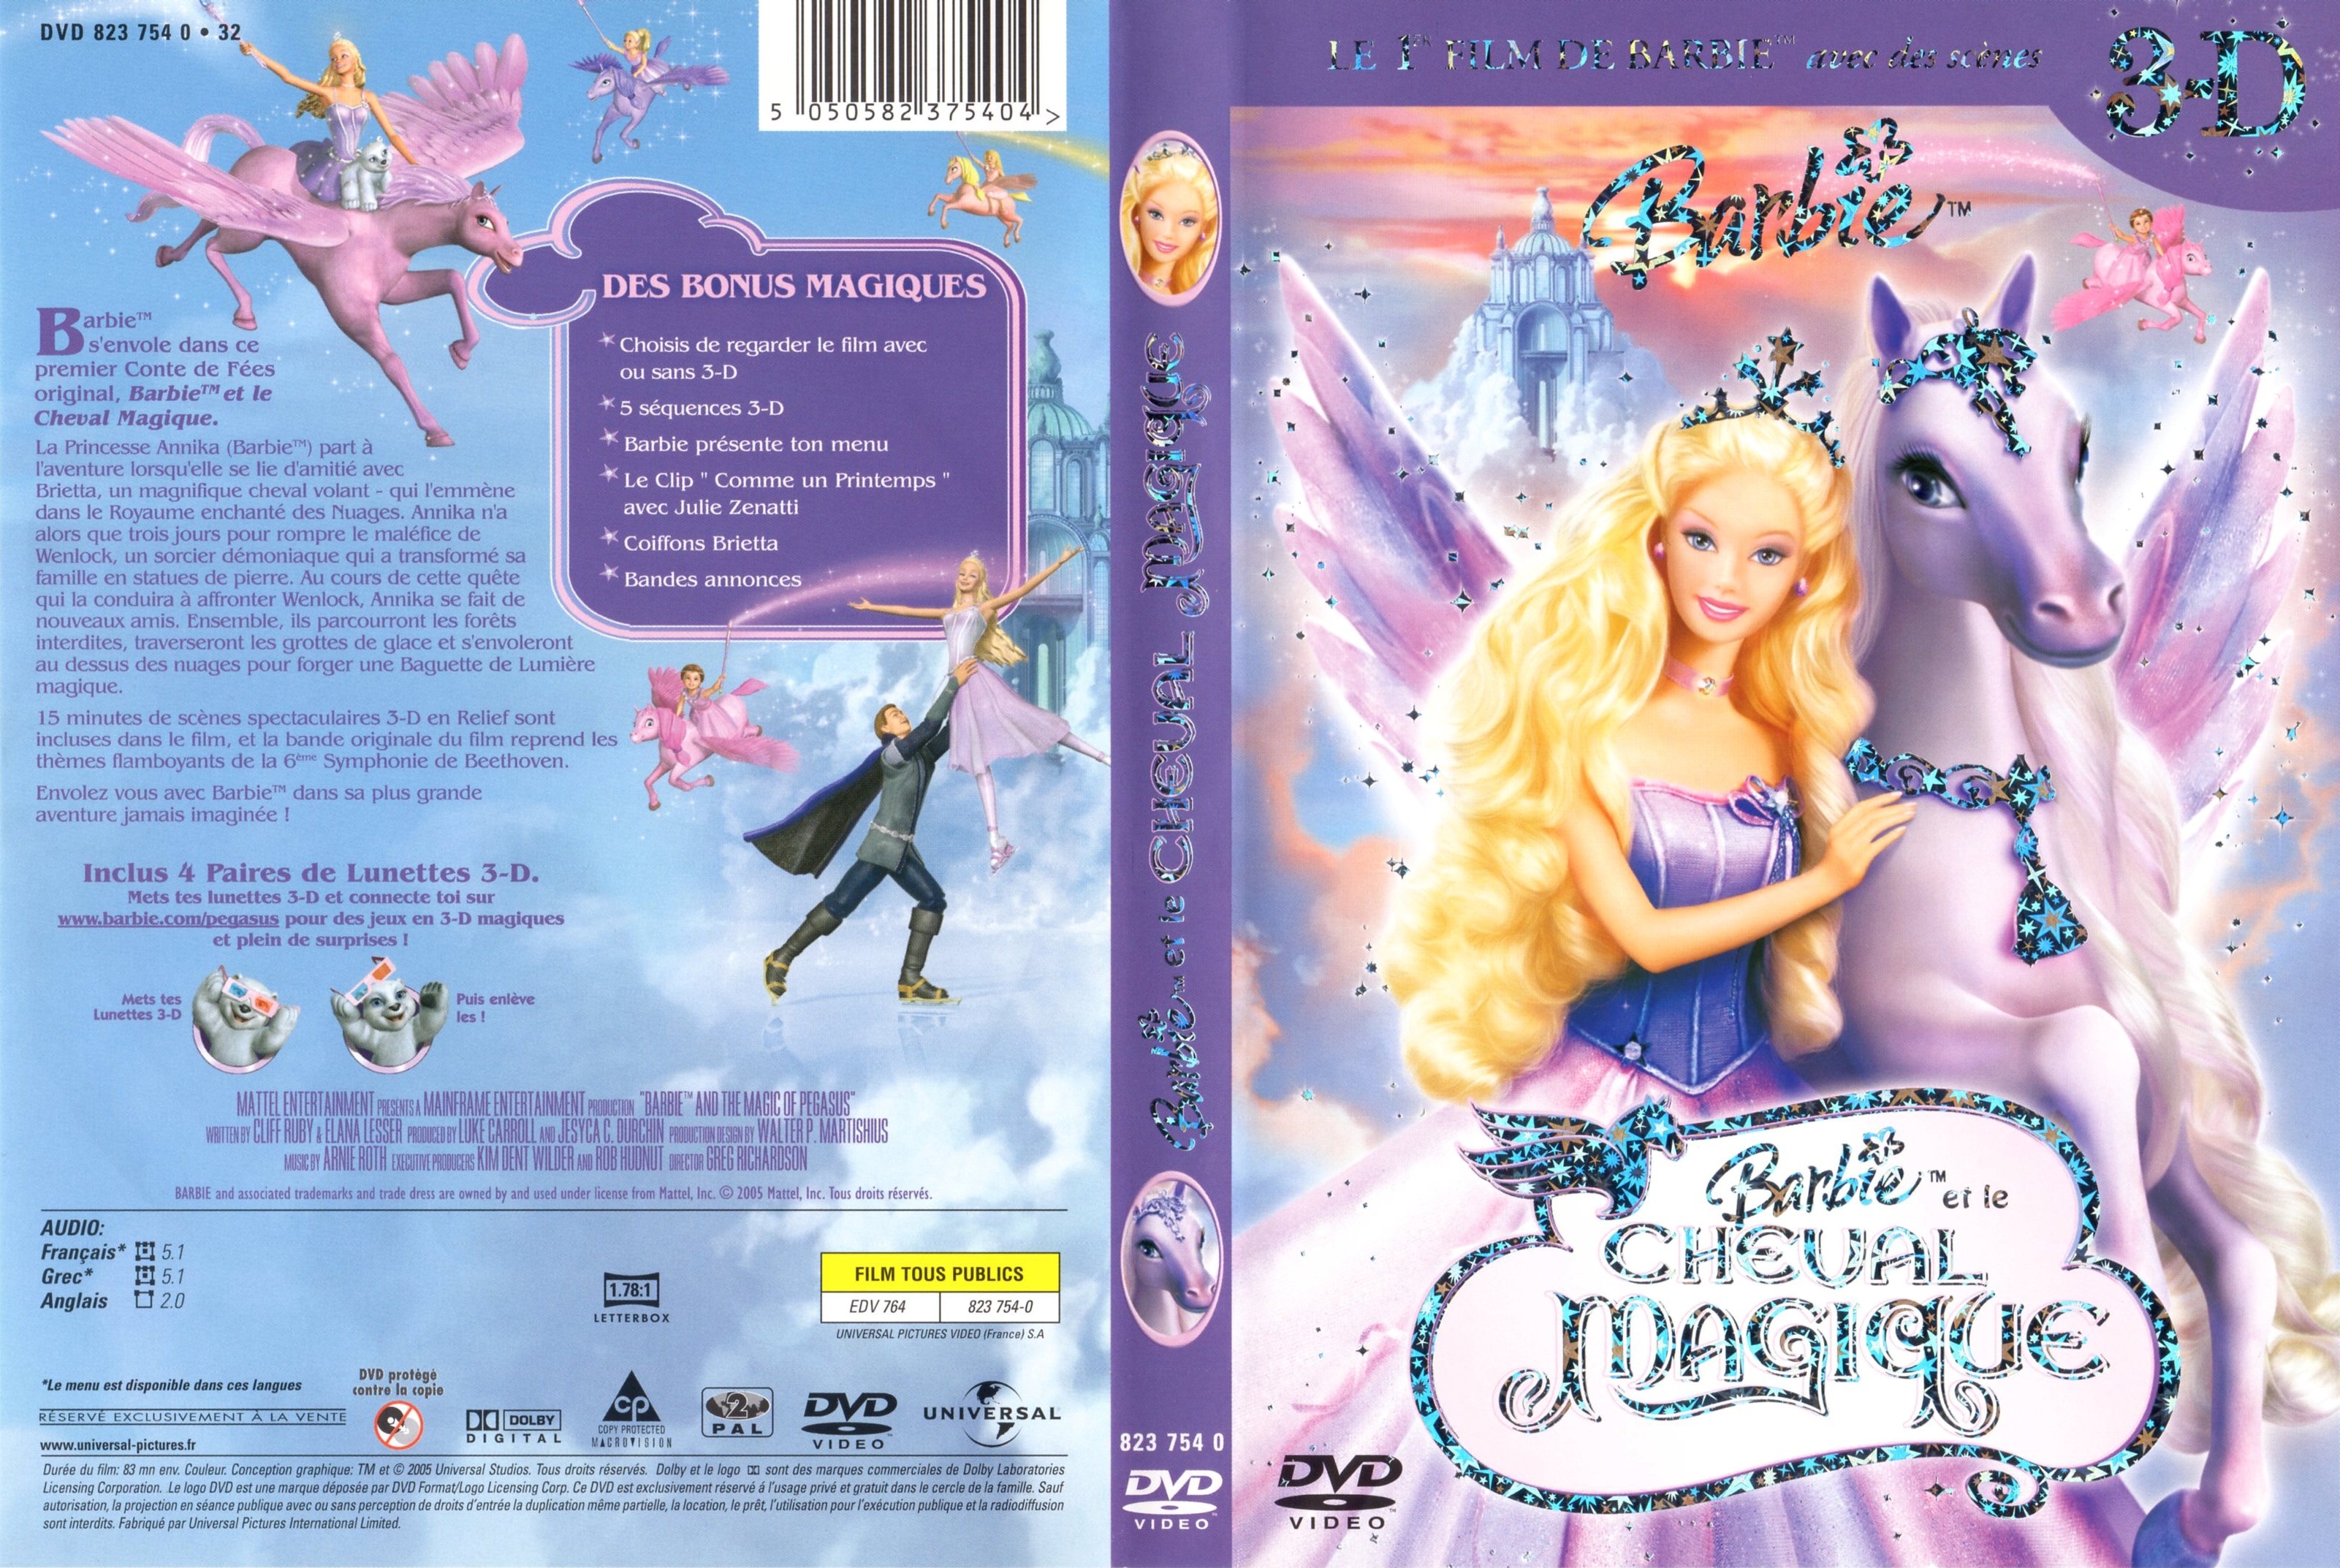 Jaquette DVD Barbie et le cheval magique v2